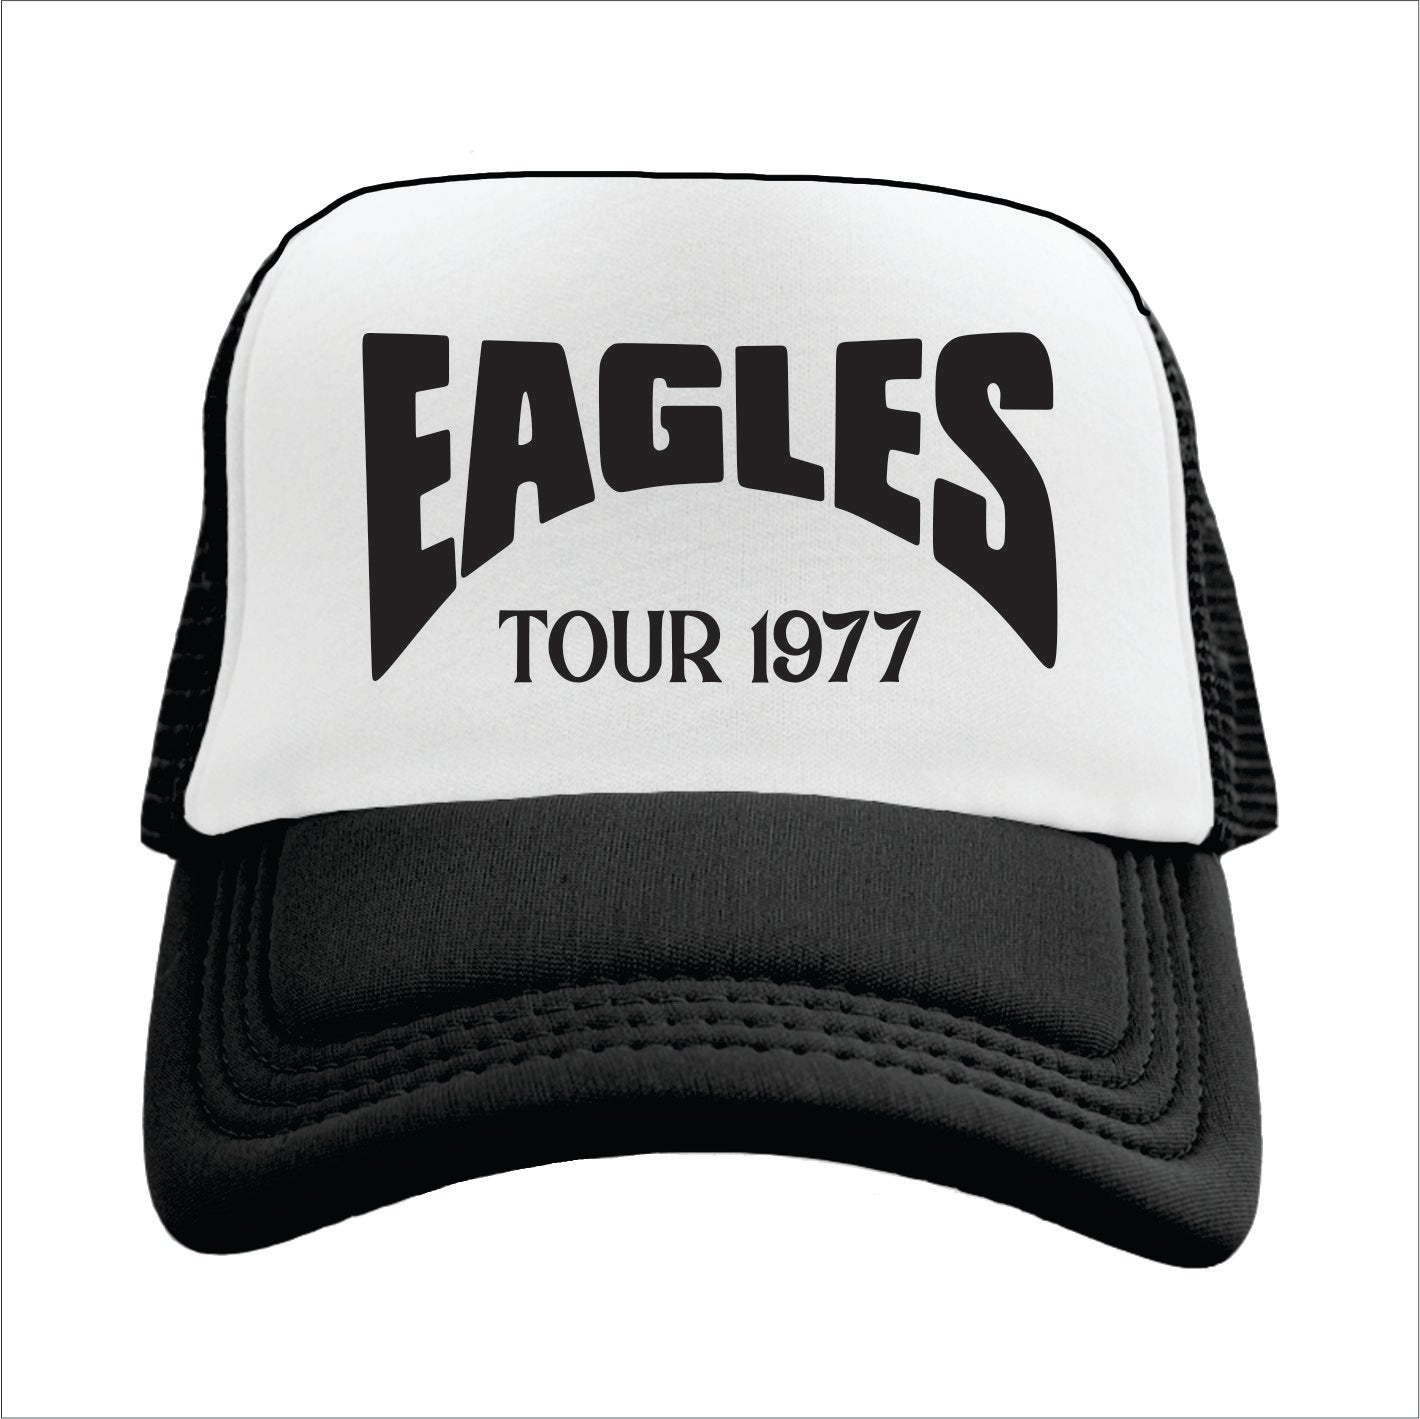 Eagles Tour 1977 Trucker Hat